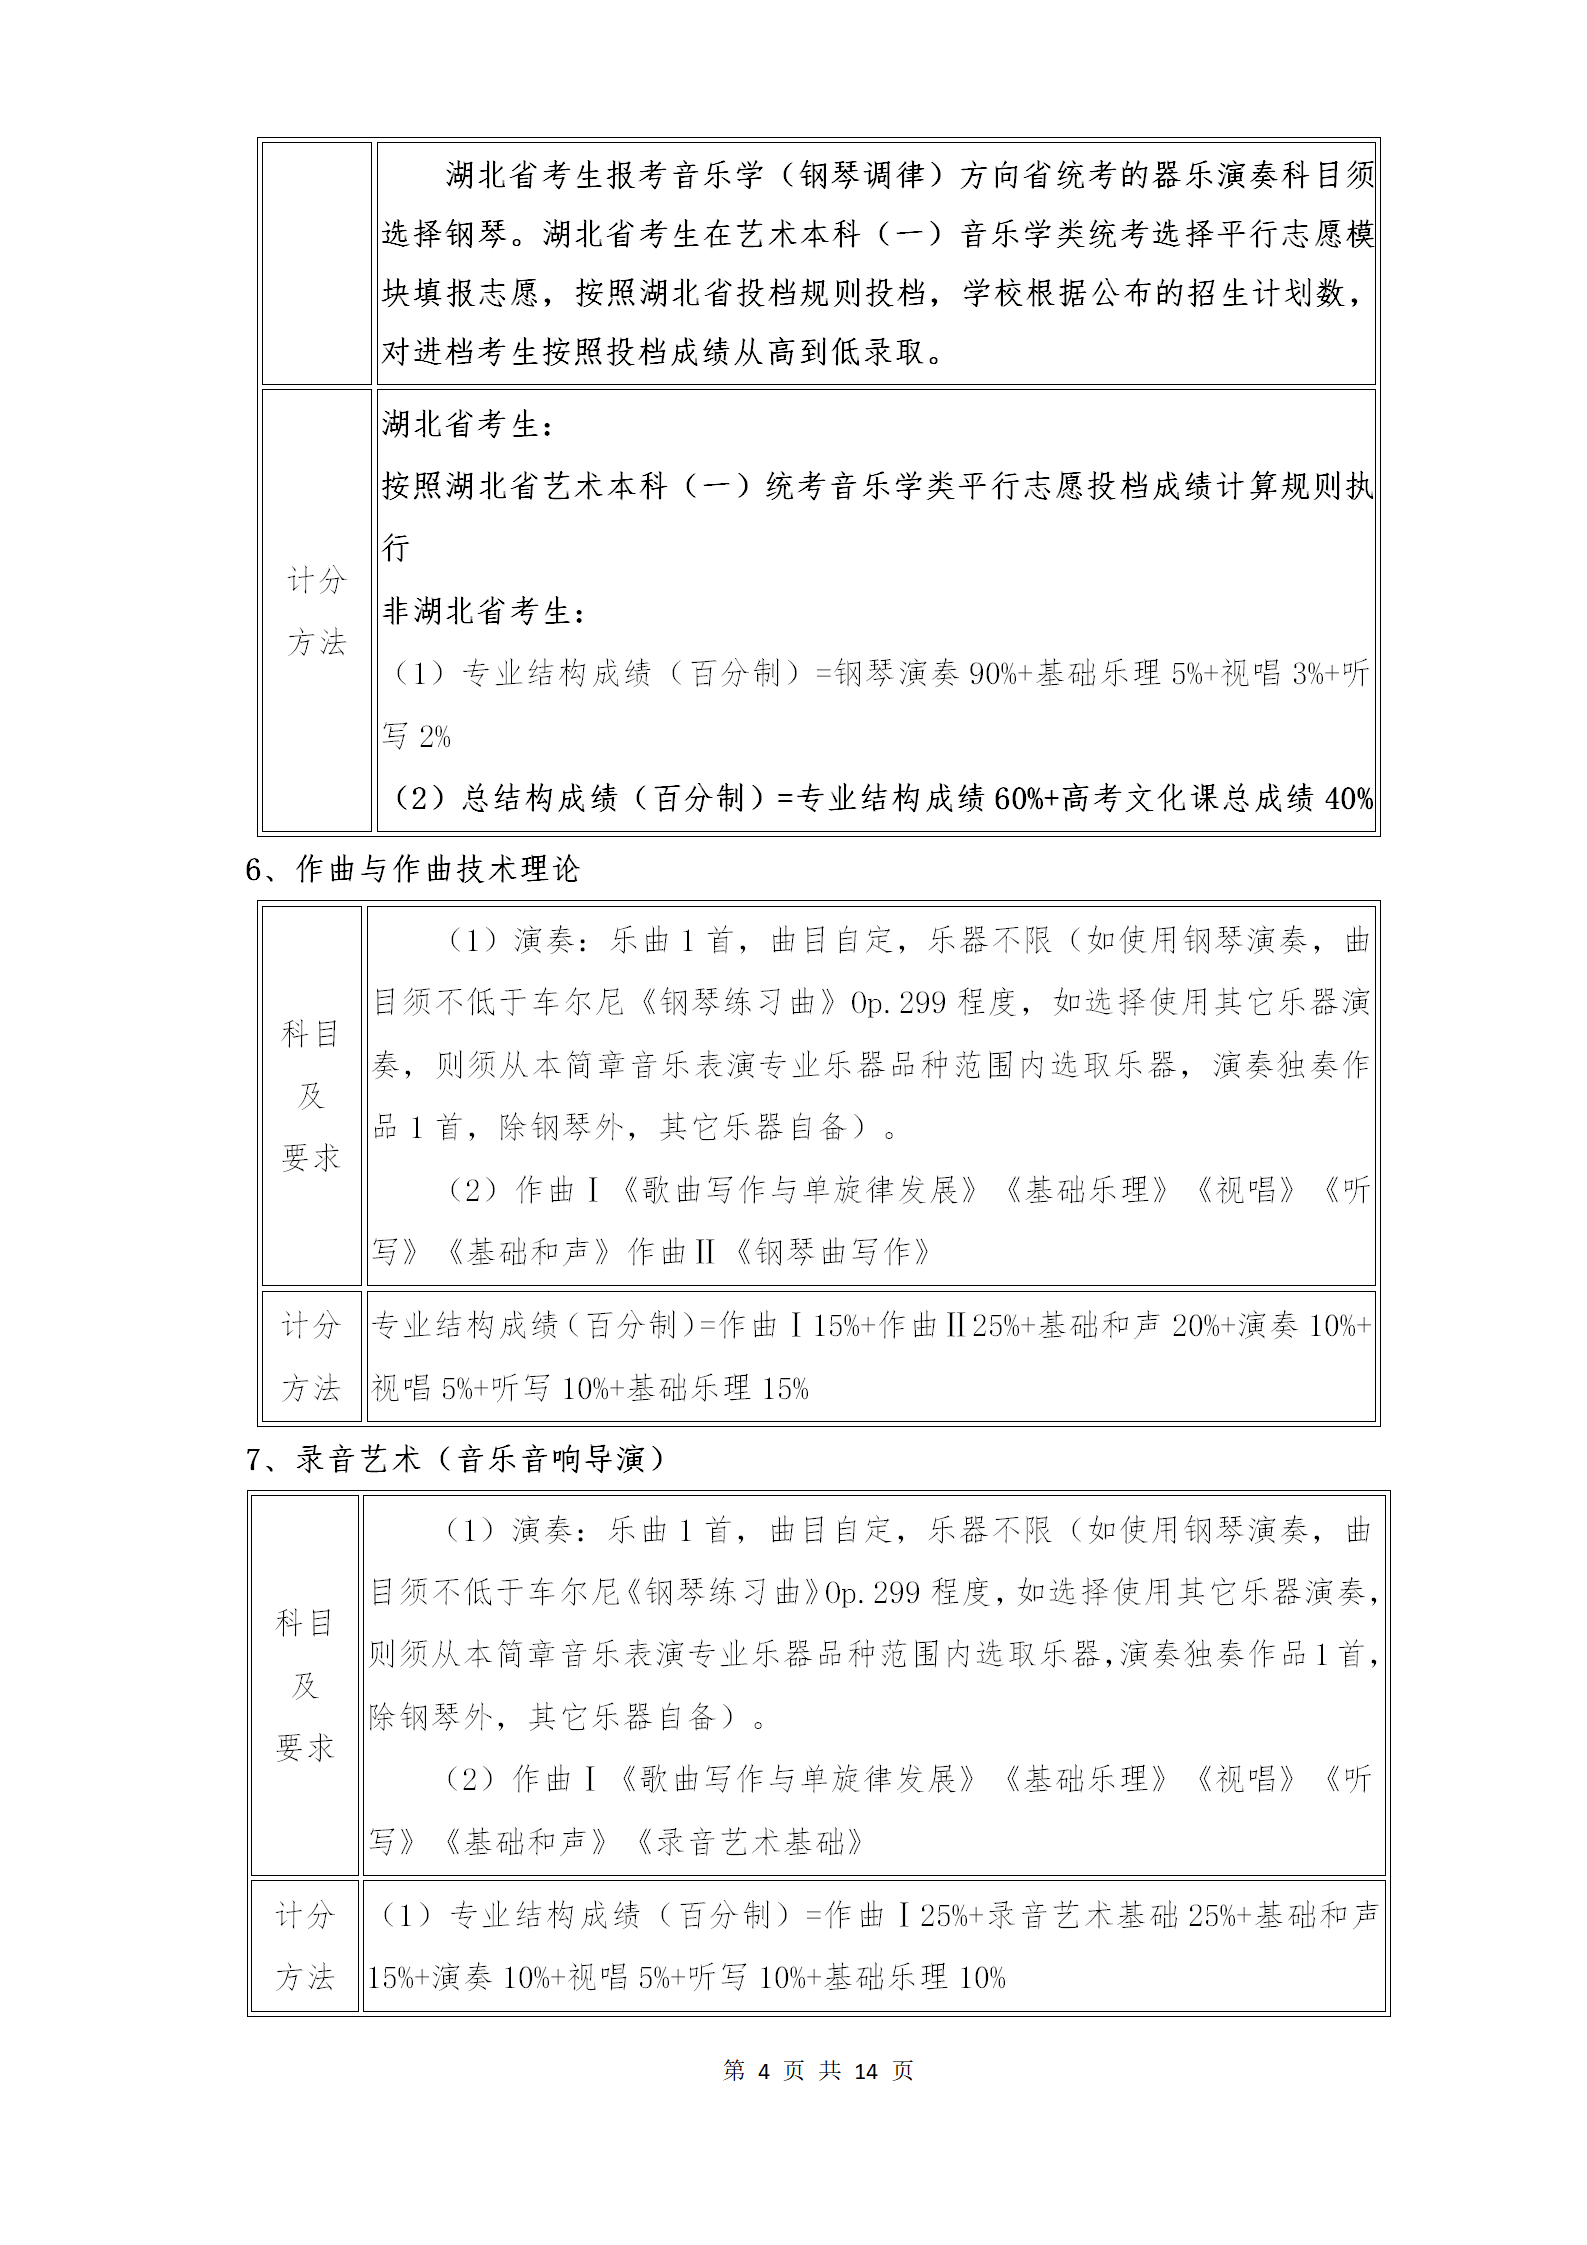 附件1：武汉音乐学院2021年普通本科招生专业考试内容和计分方法（调整版）_04.png